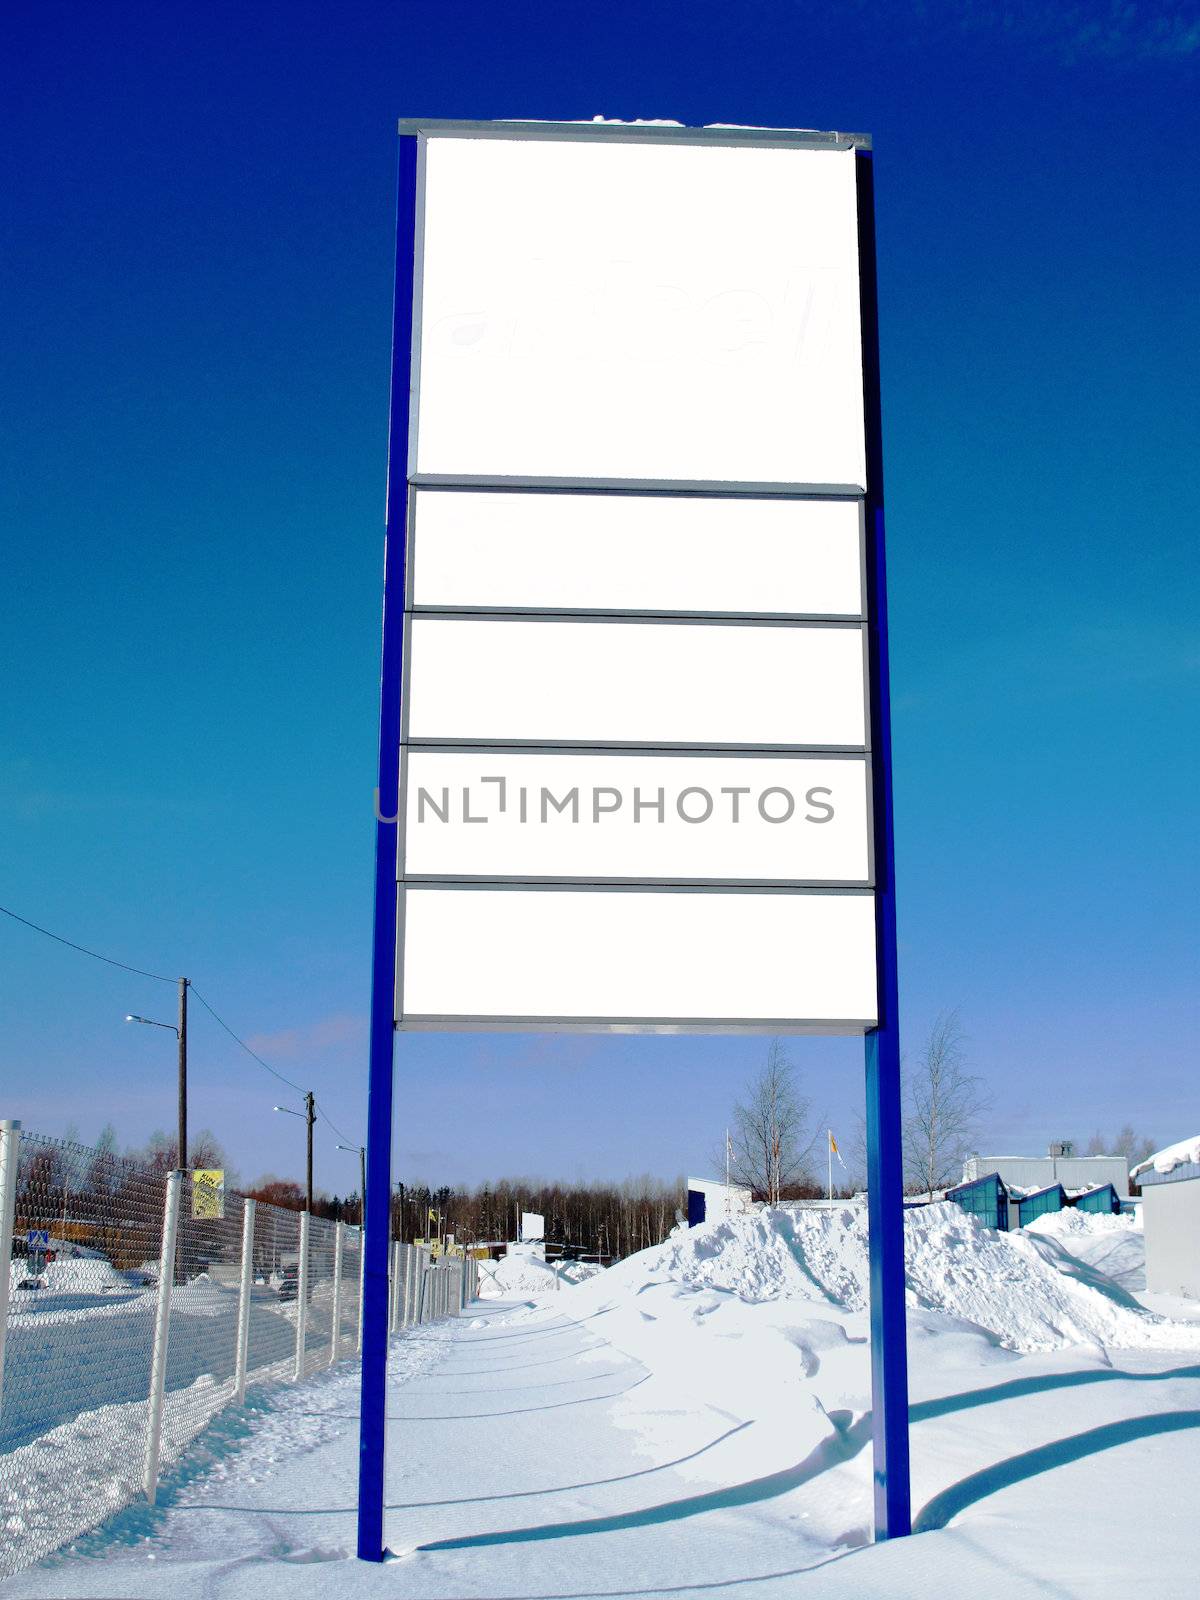 The street empty bilboard taken in winter time in Finland                               